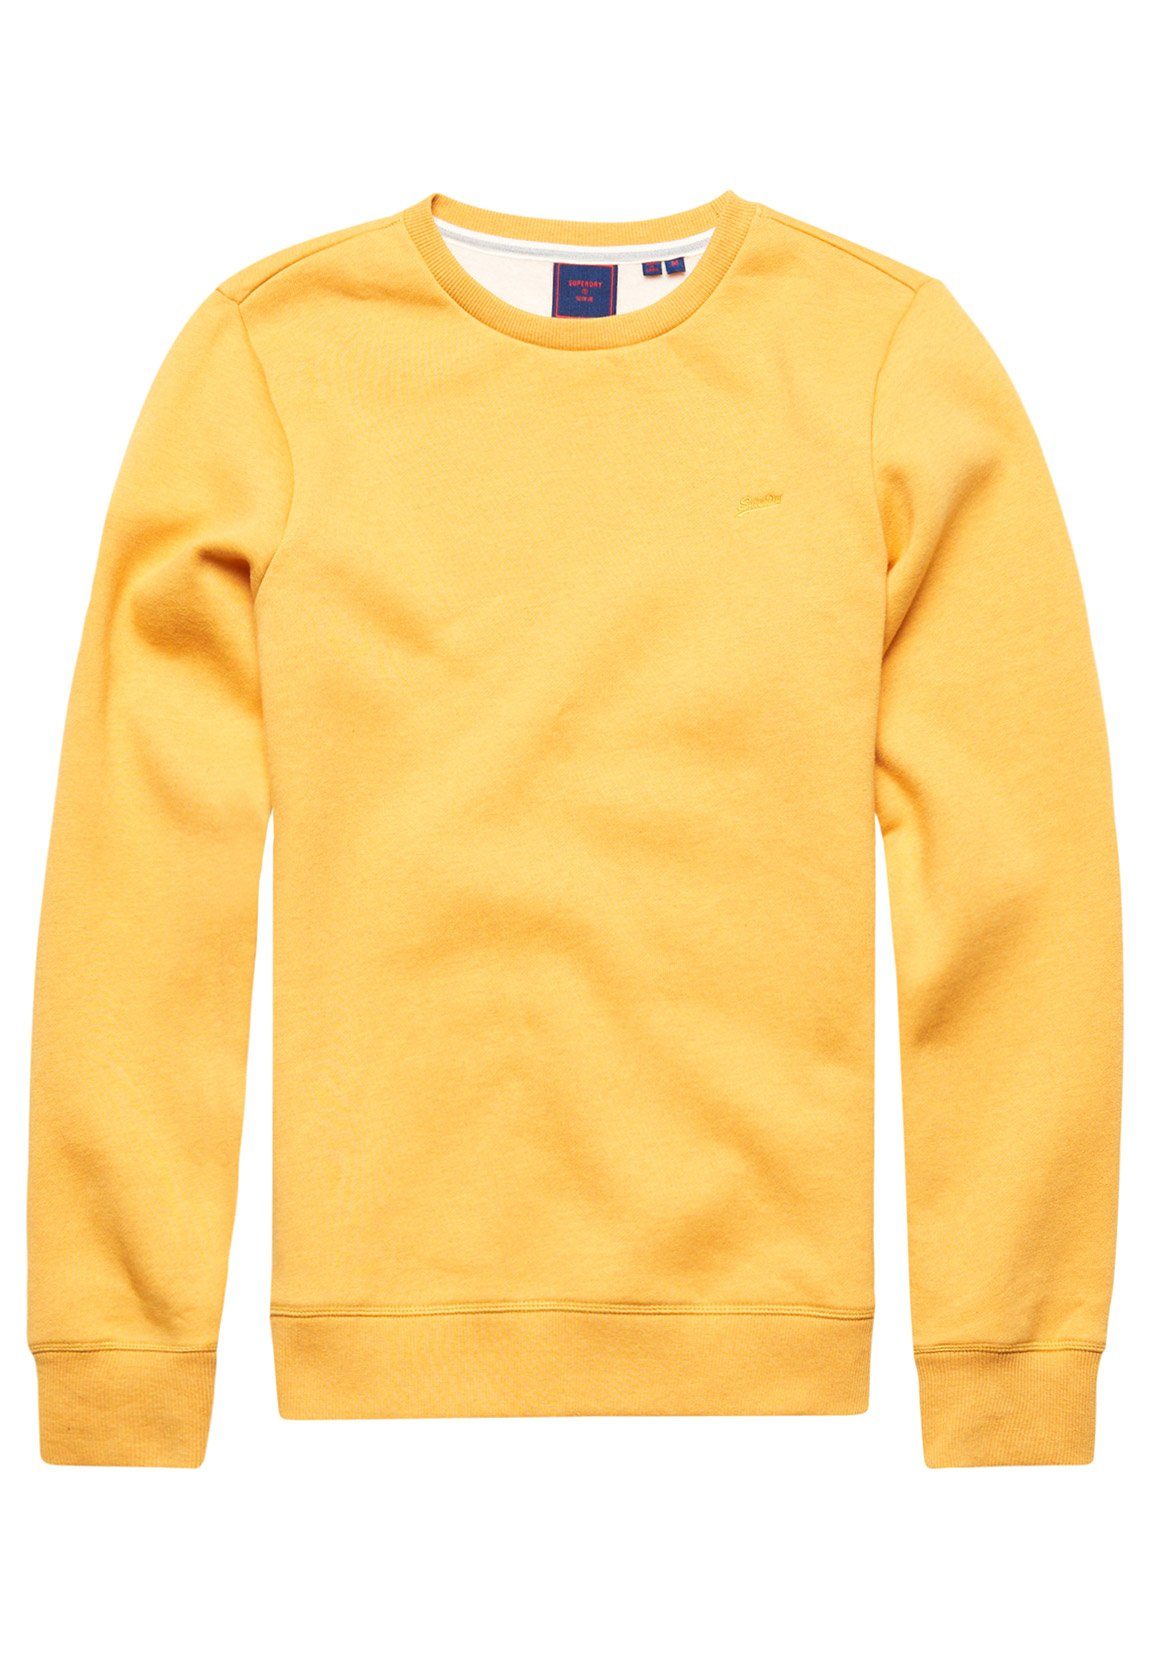 Superdry Sweater »Superdry Herren Sweater VINTAGE LOGO EMB CREW Tumeric  Marl Gelb« online kaufen | OTTO